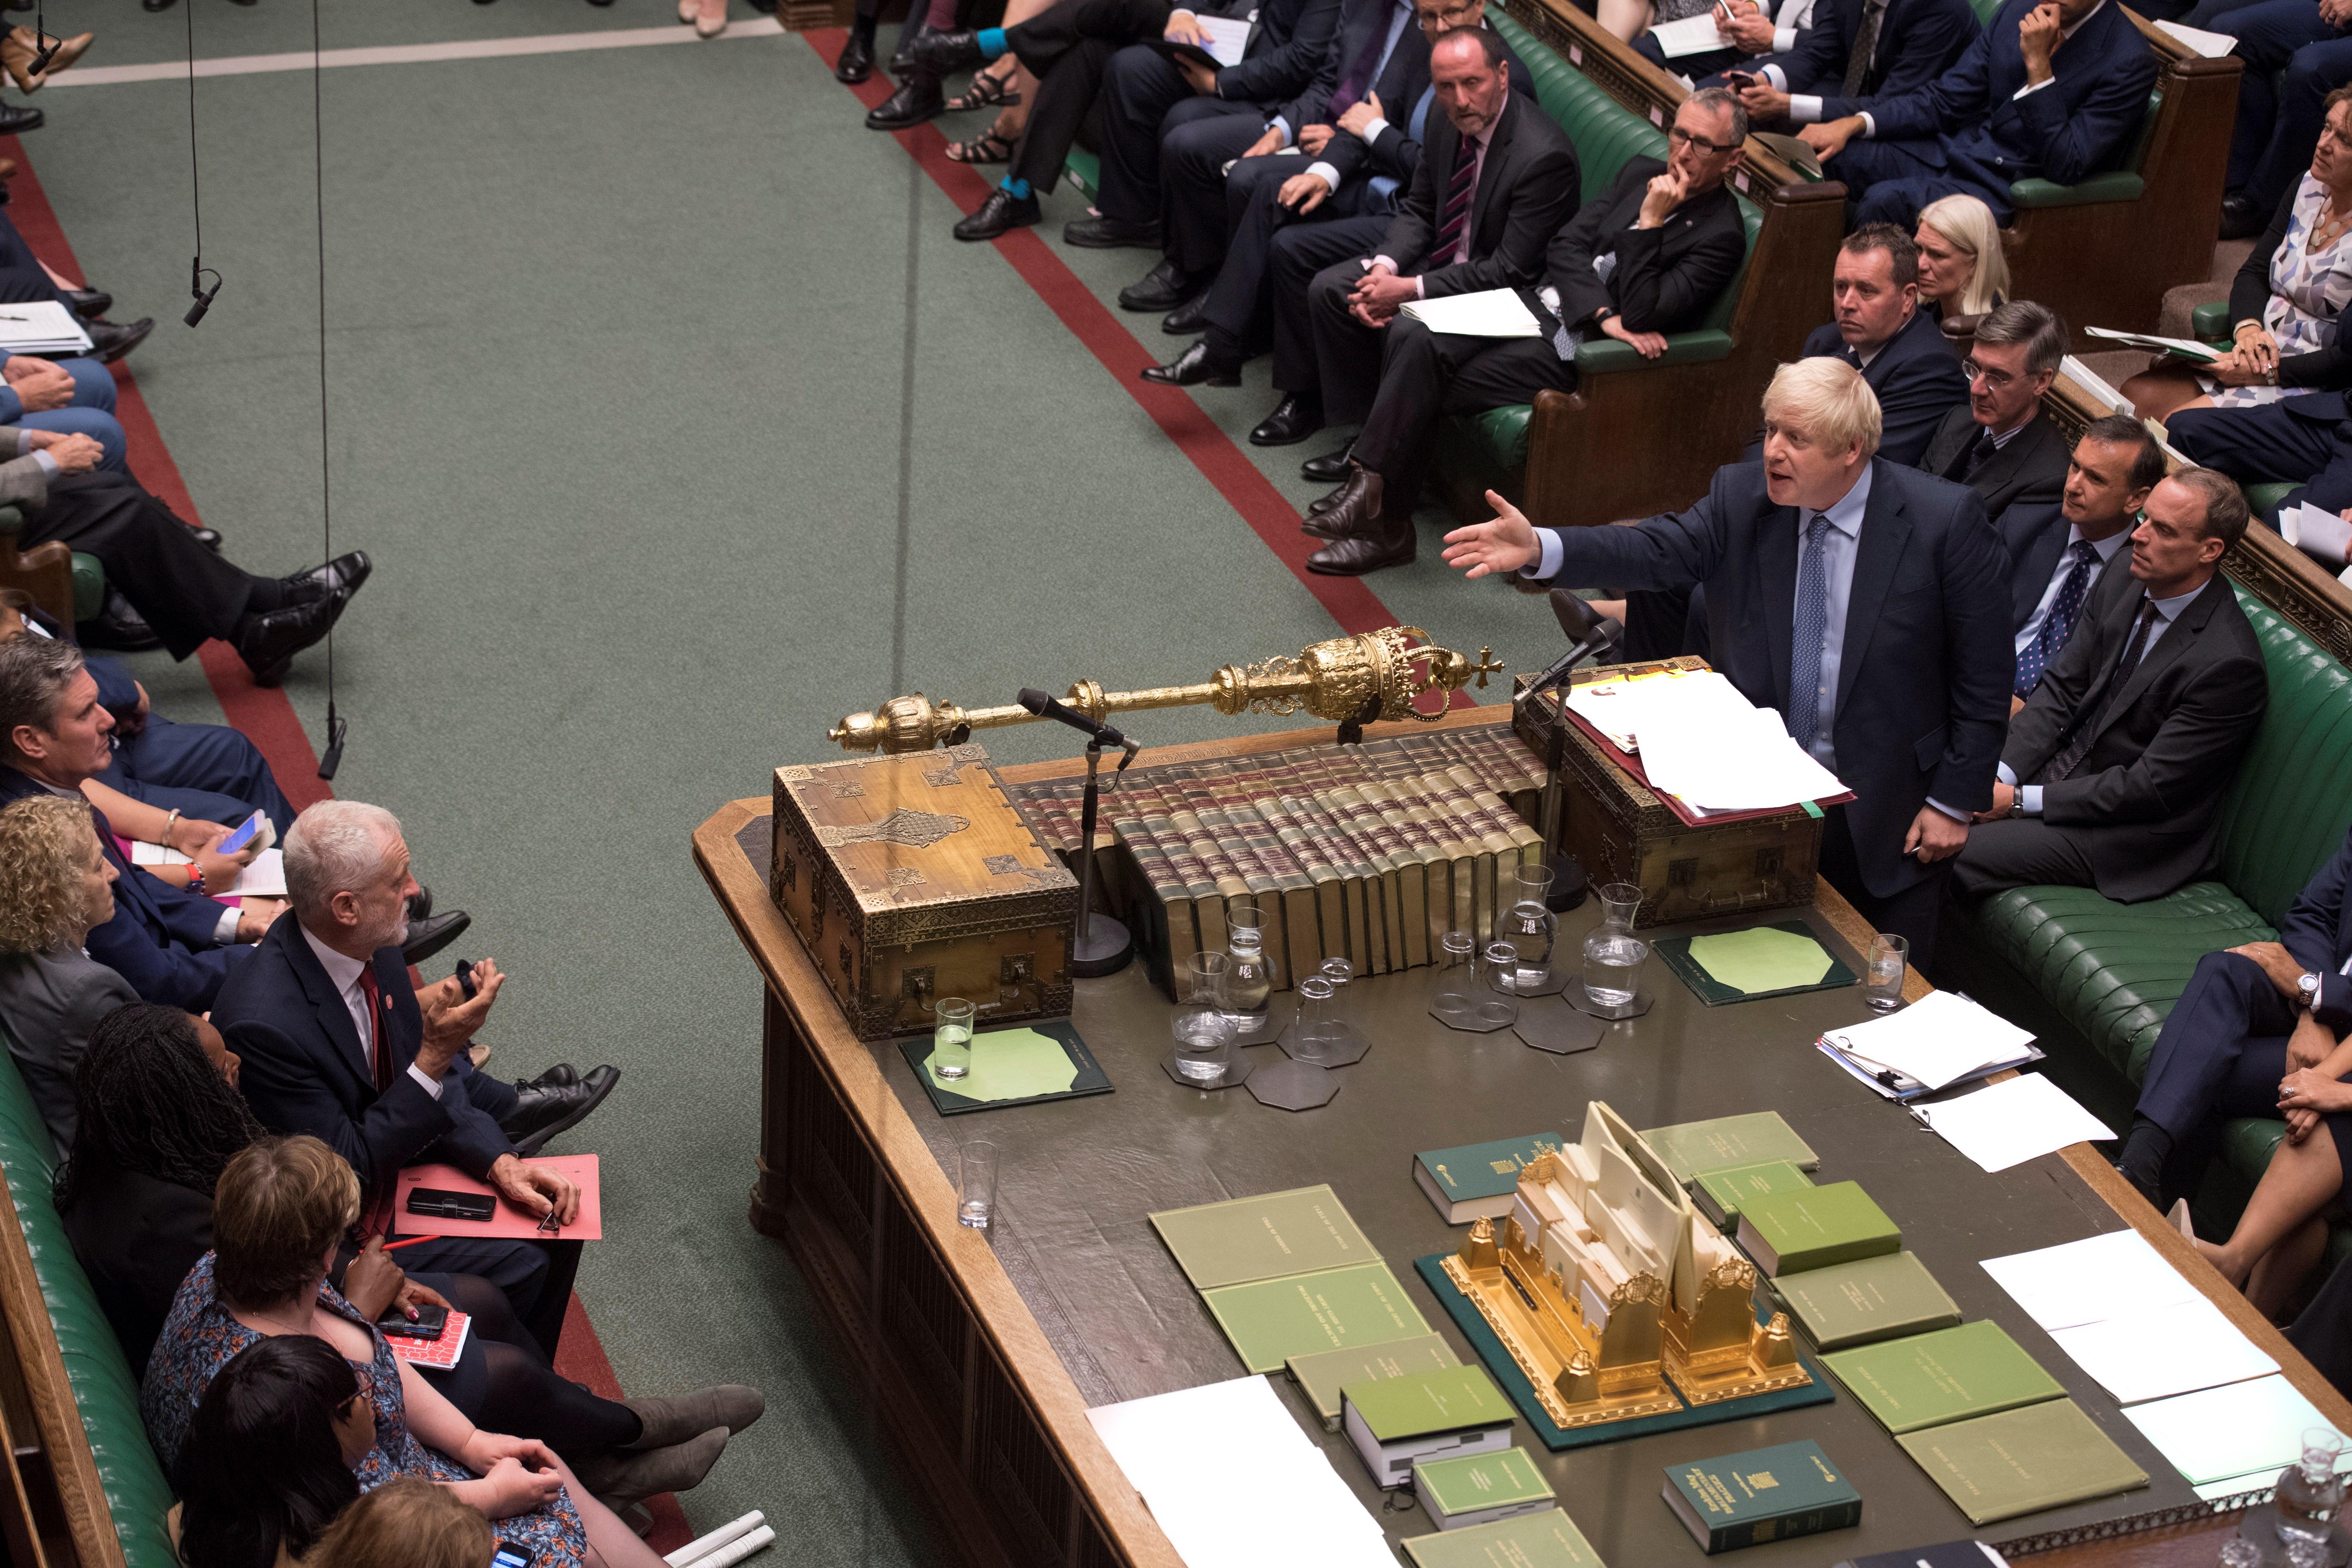 El Parlamento británico bloquea el duro de Johnson y su amenaza de convocar elecciones - Republica.com